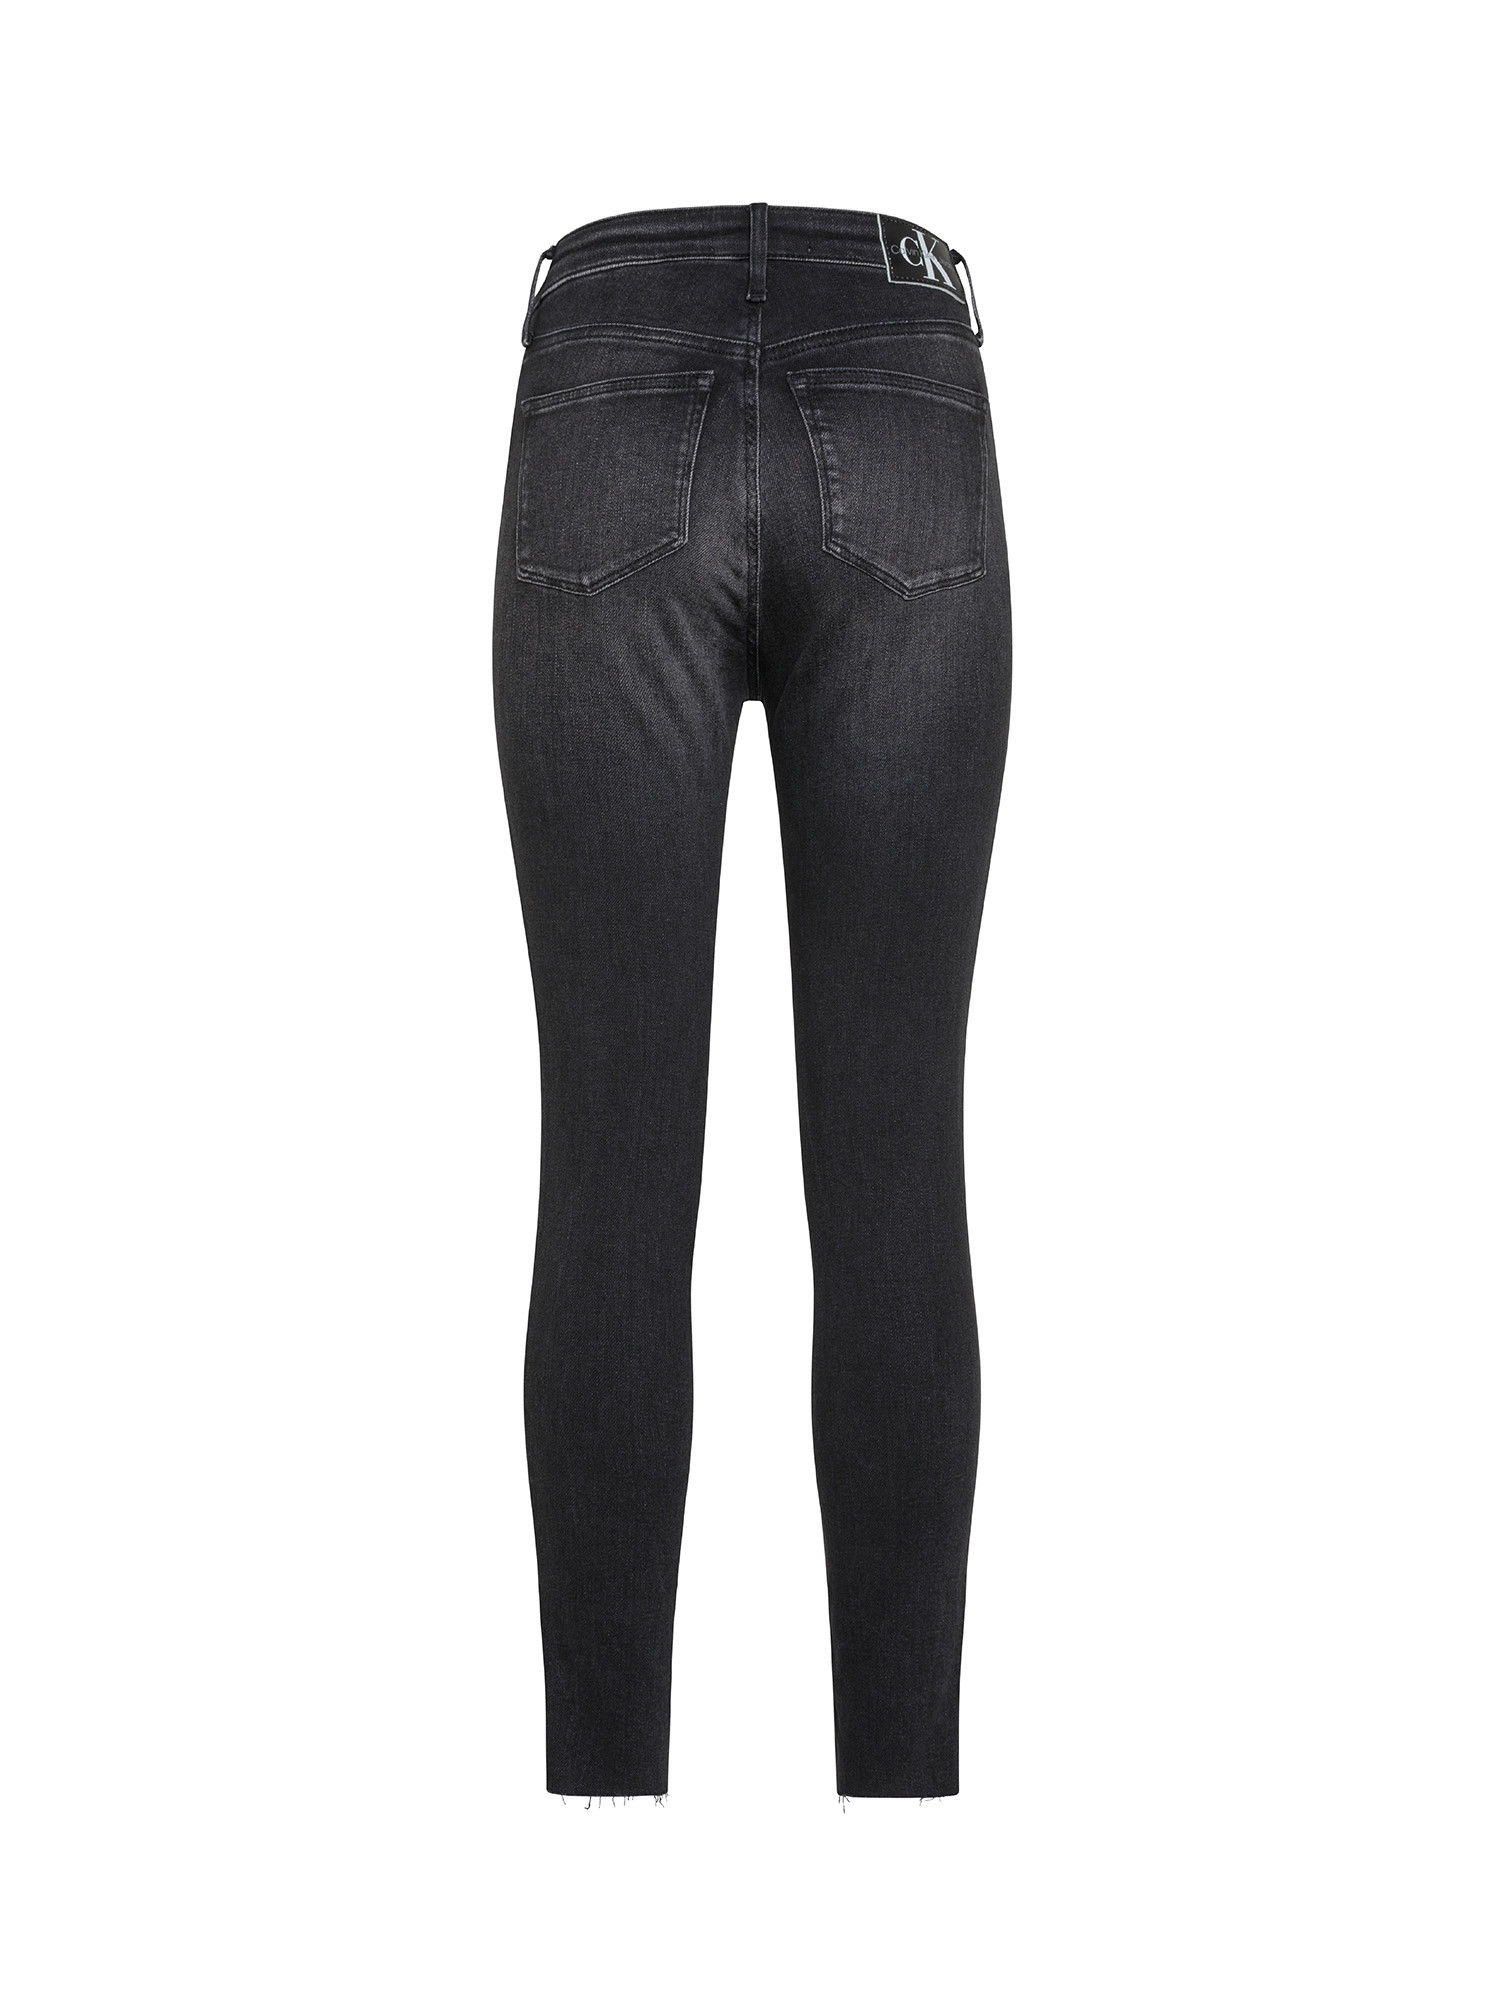 Calvin Klein Jeans - Super skinny five pocket jeans, Black, large image number 1